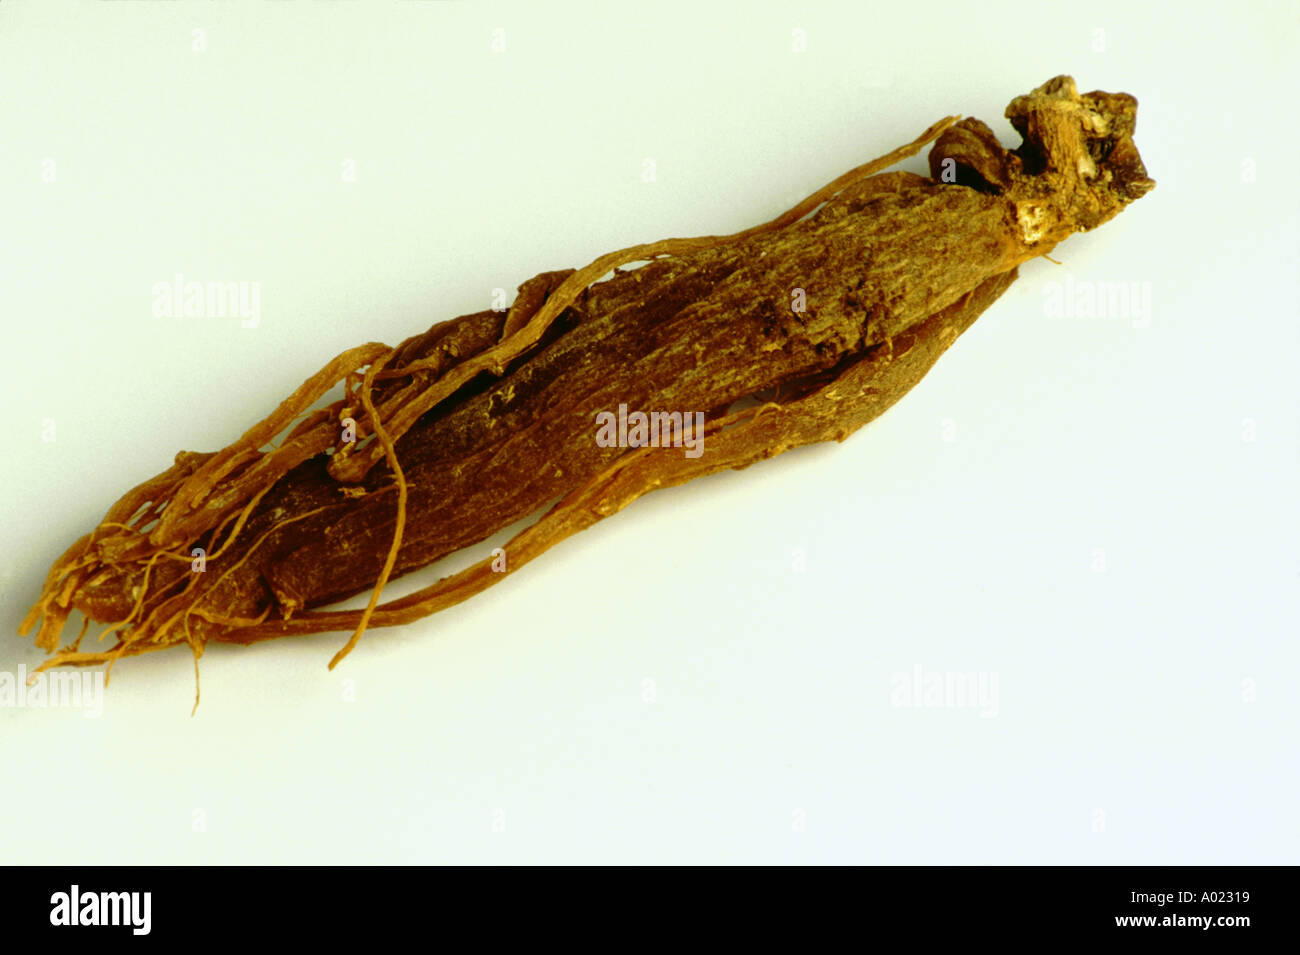 Ginseng root Panax ginseng medicinal plant Stock Photo